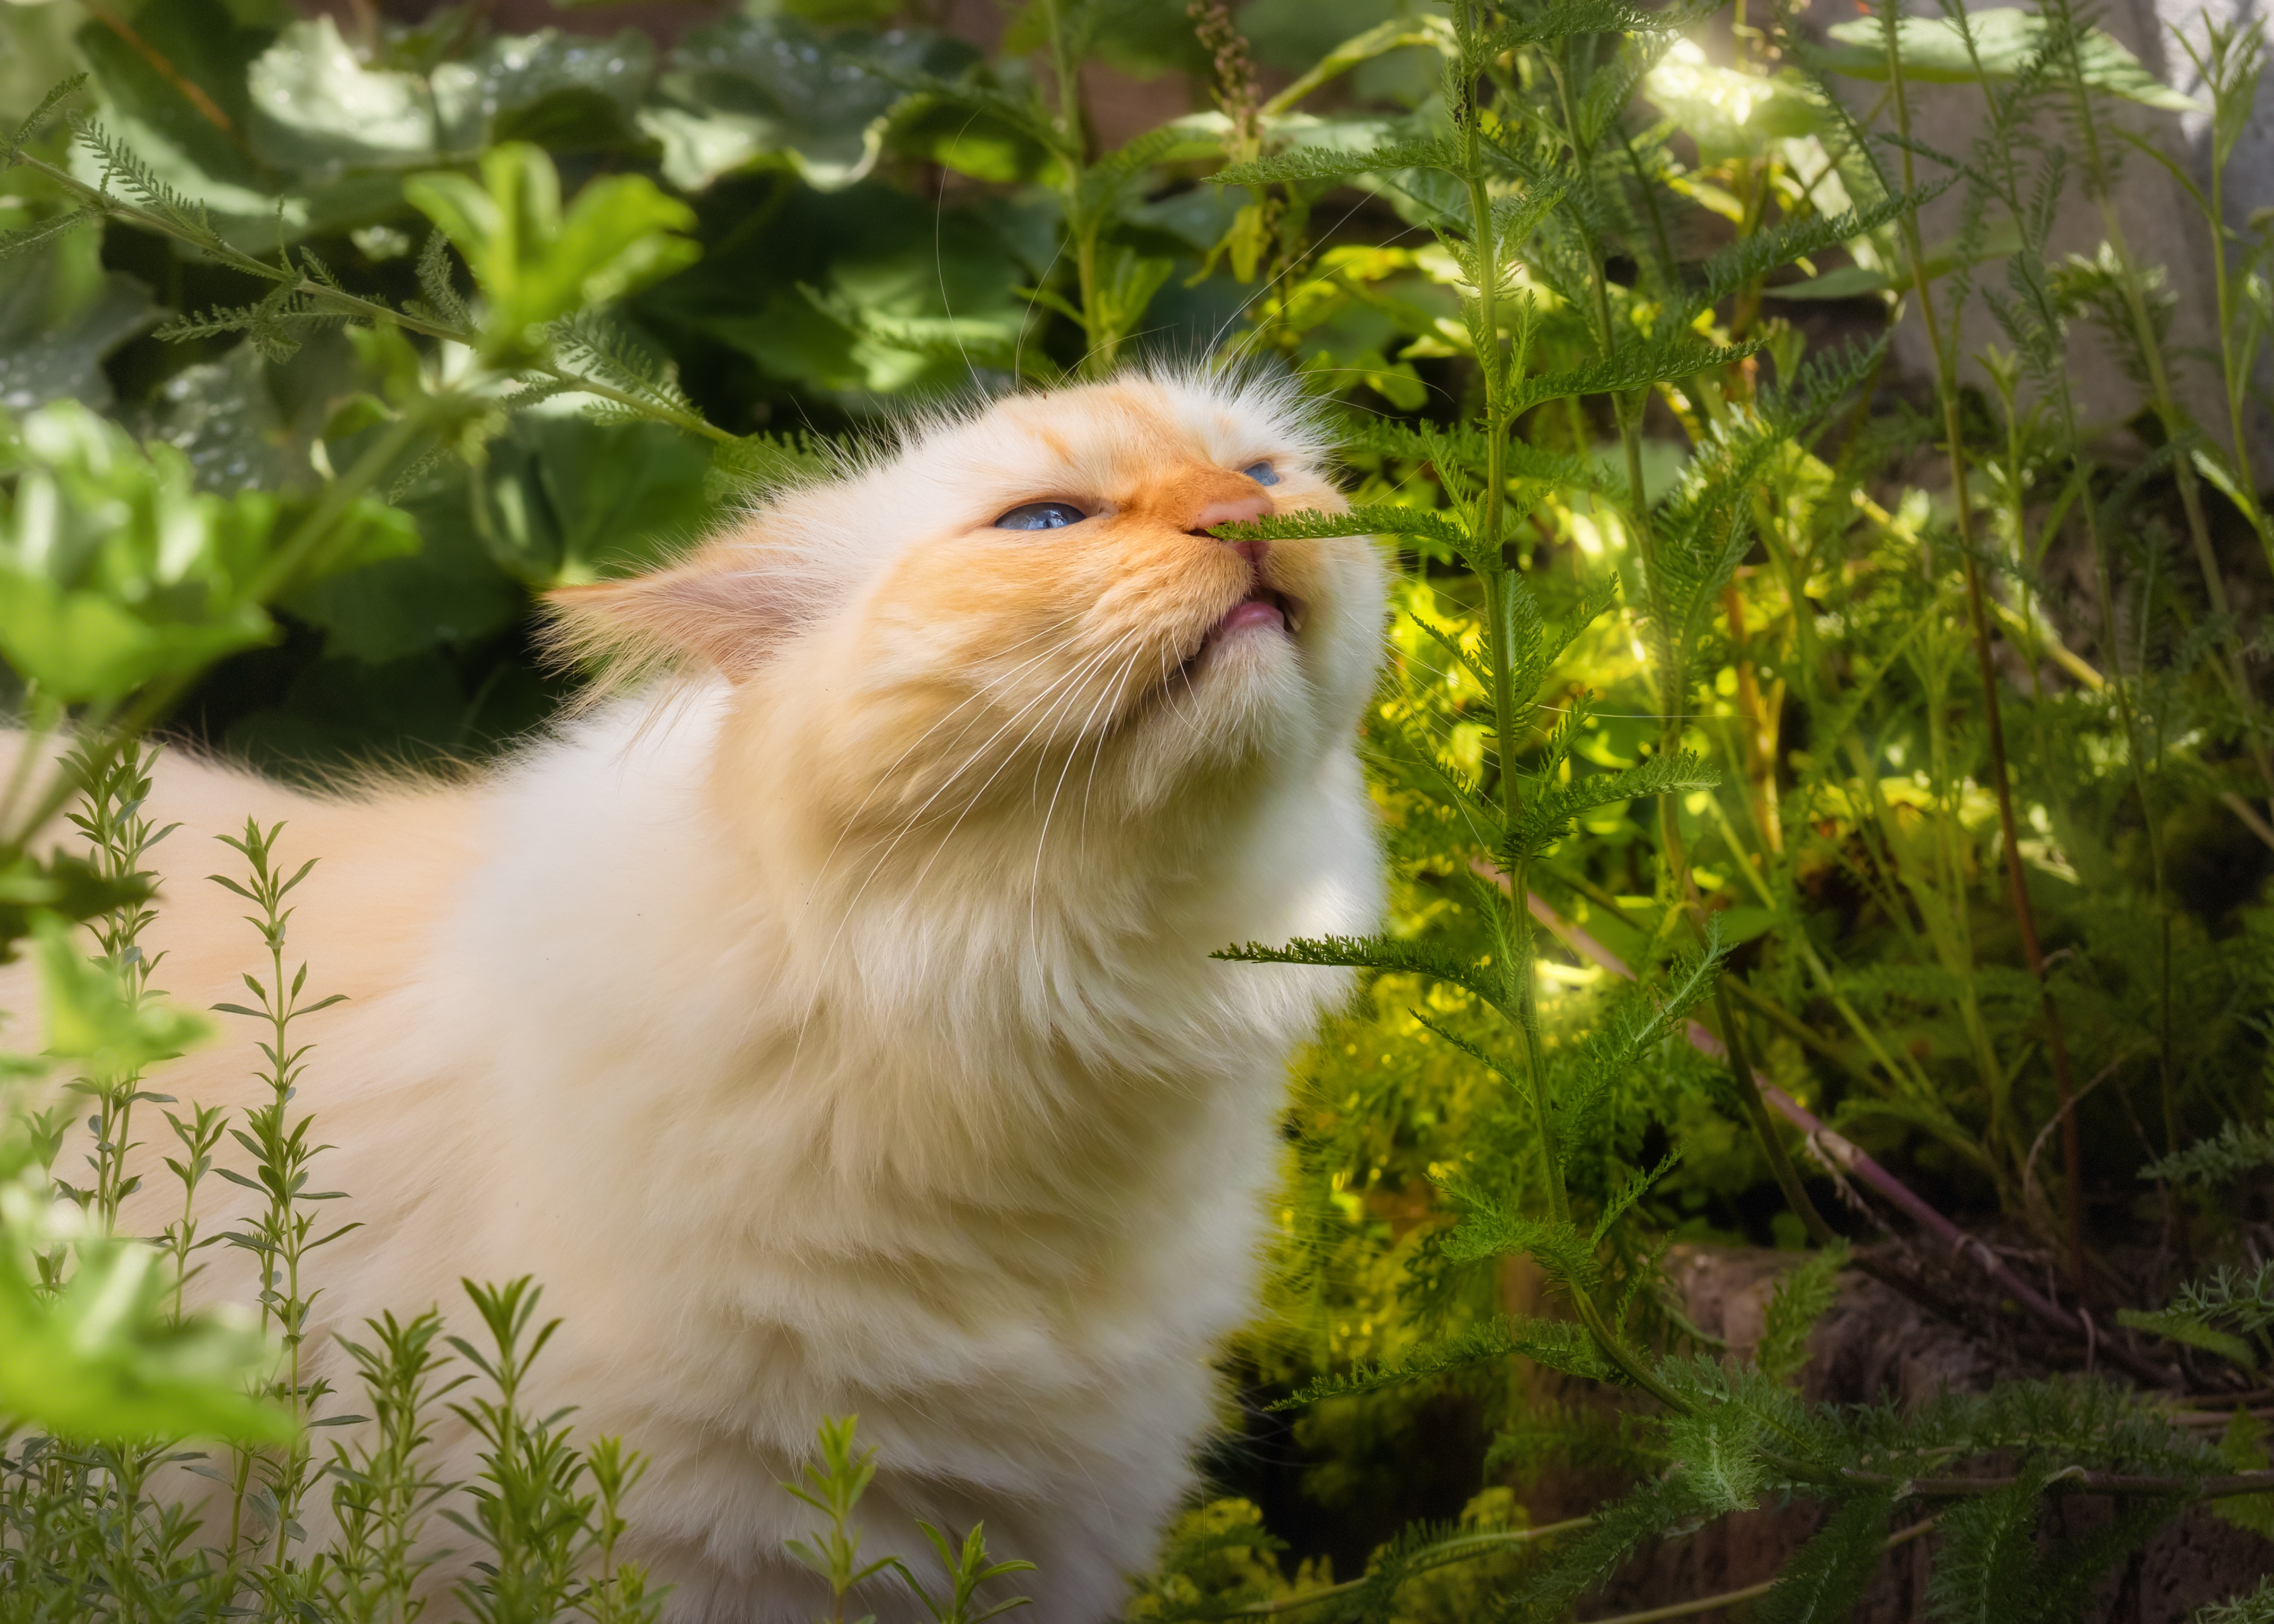 Animaux : comment faire pousser sa propre herbe à chat ?